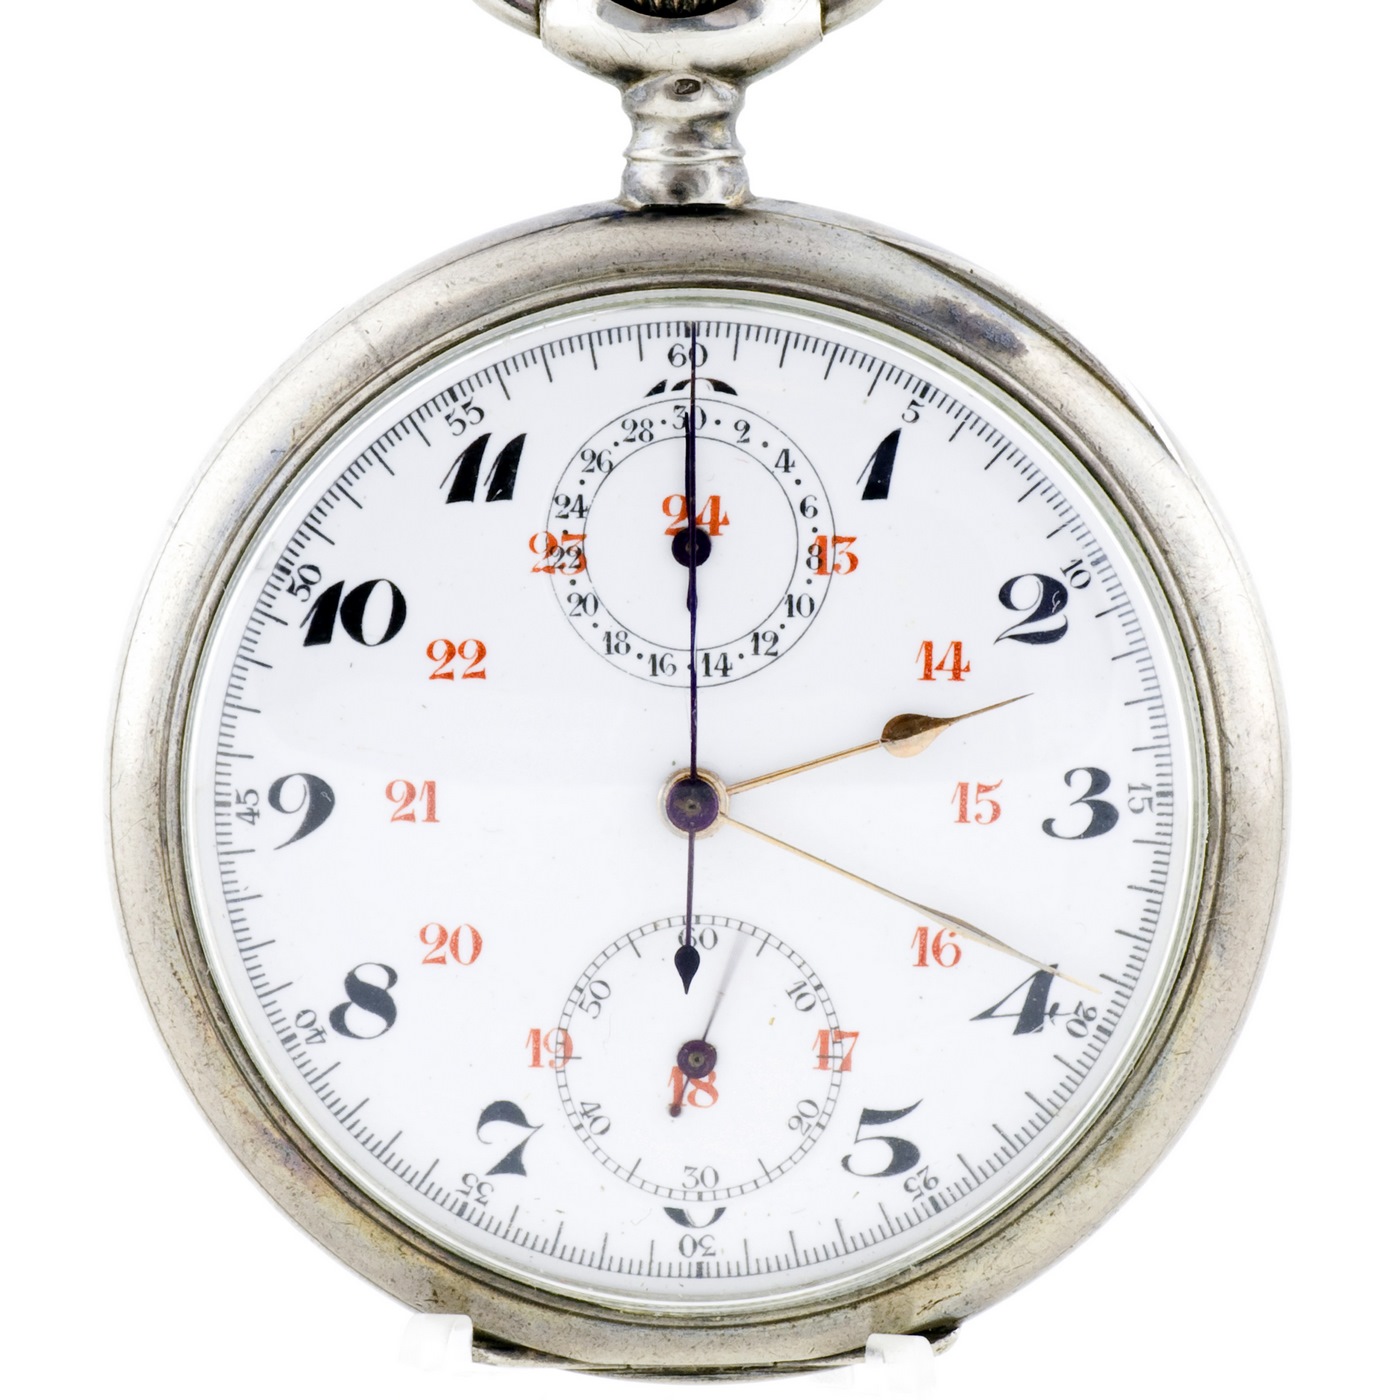 Swiss Chronometer Watch, Lepine und Remontoir. Schweiz, ca. 1890.